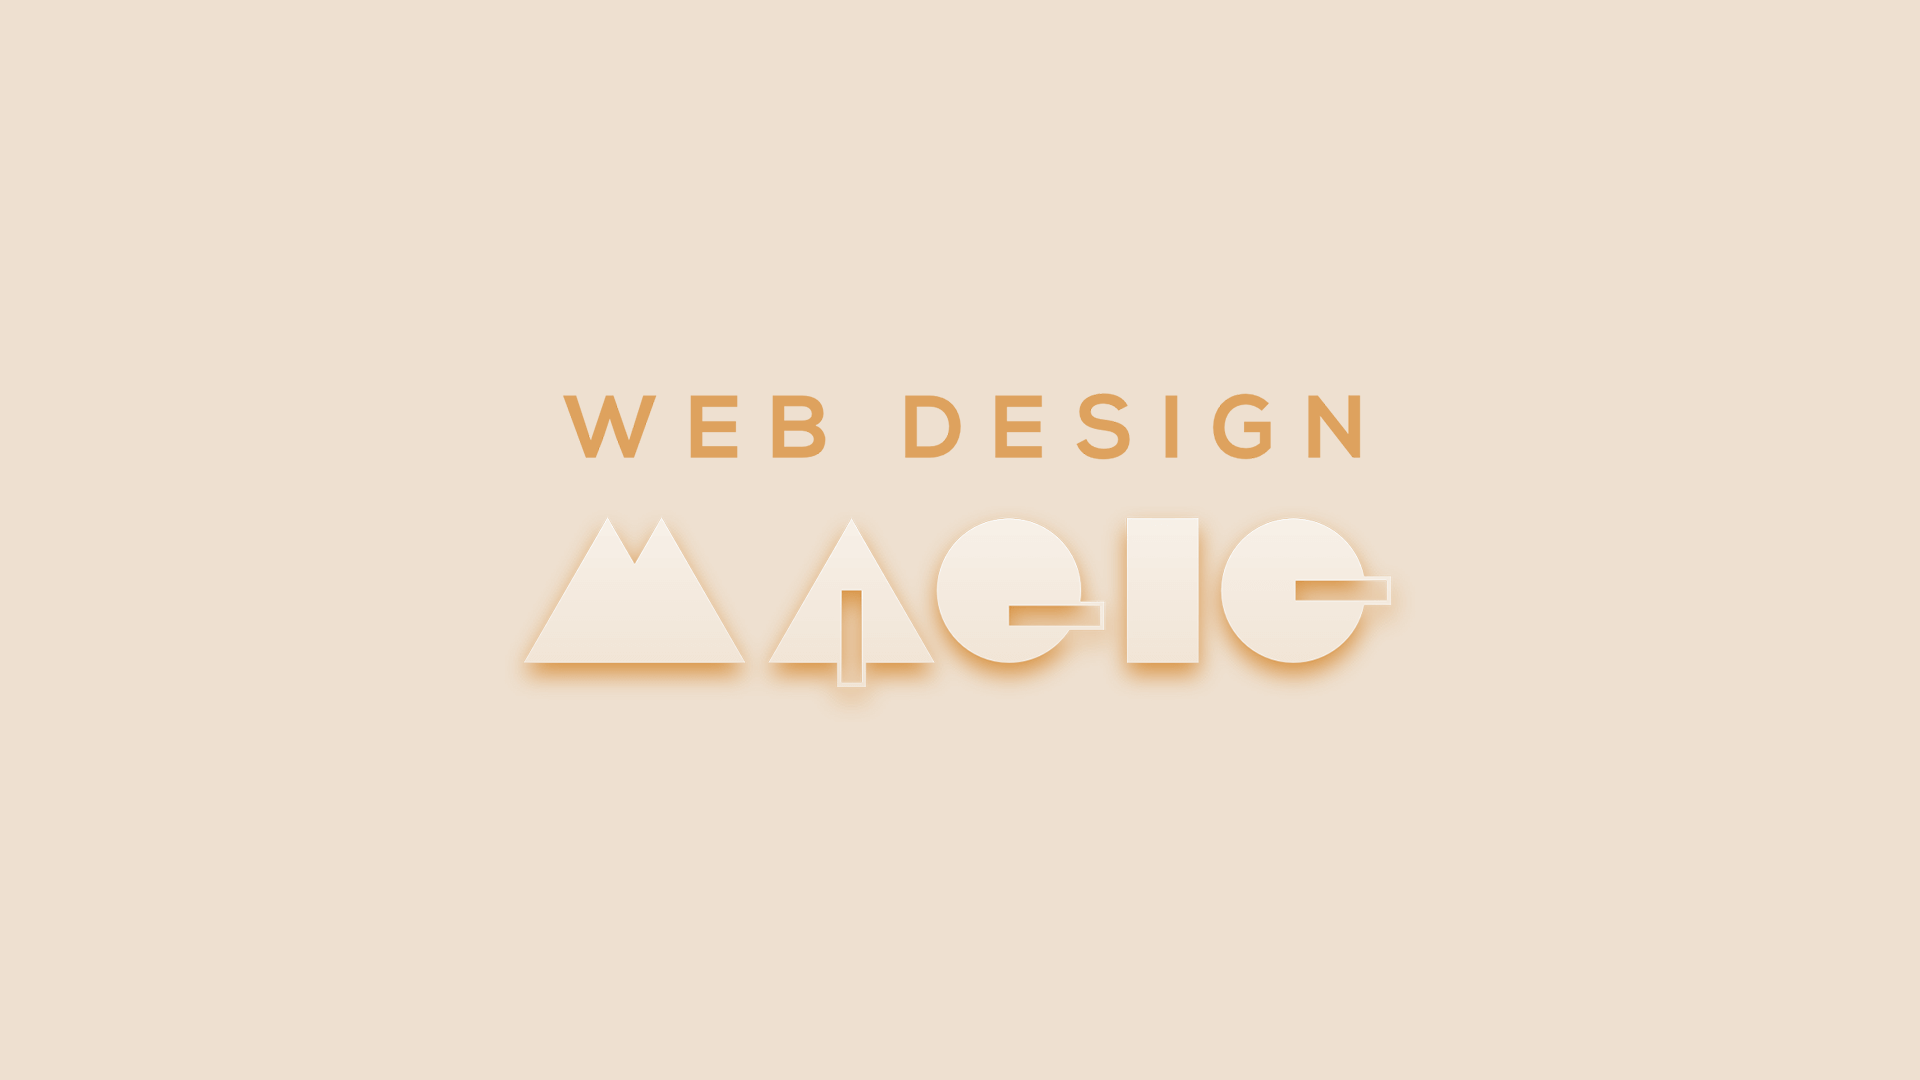 Web Design Magic